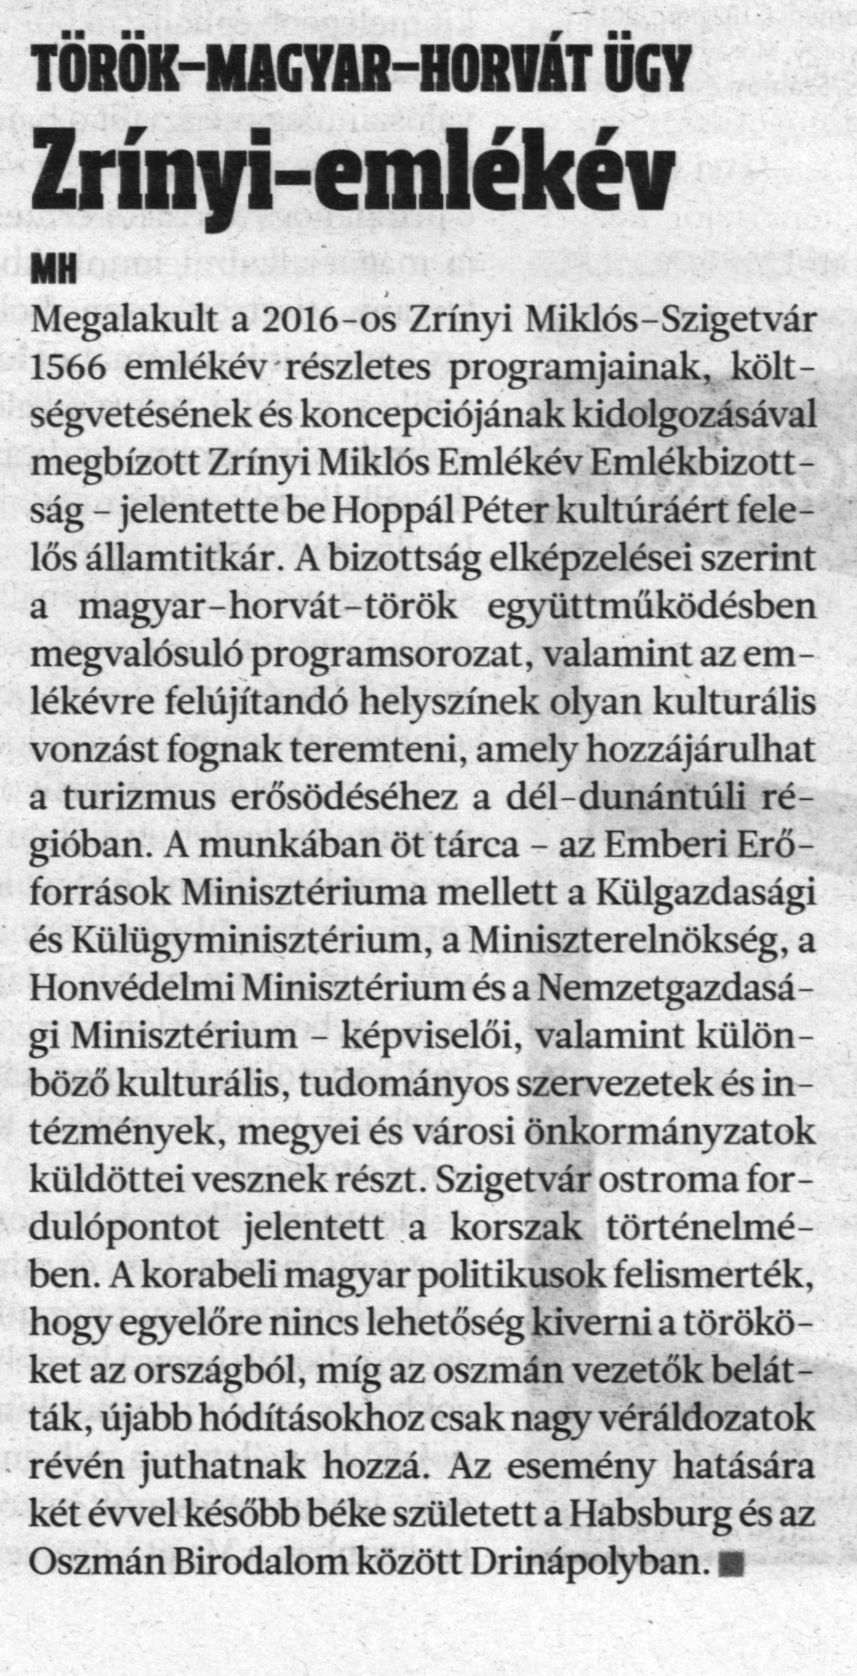 Zrínyi-emlékév Török-magyar-horvát ügy